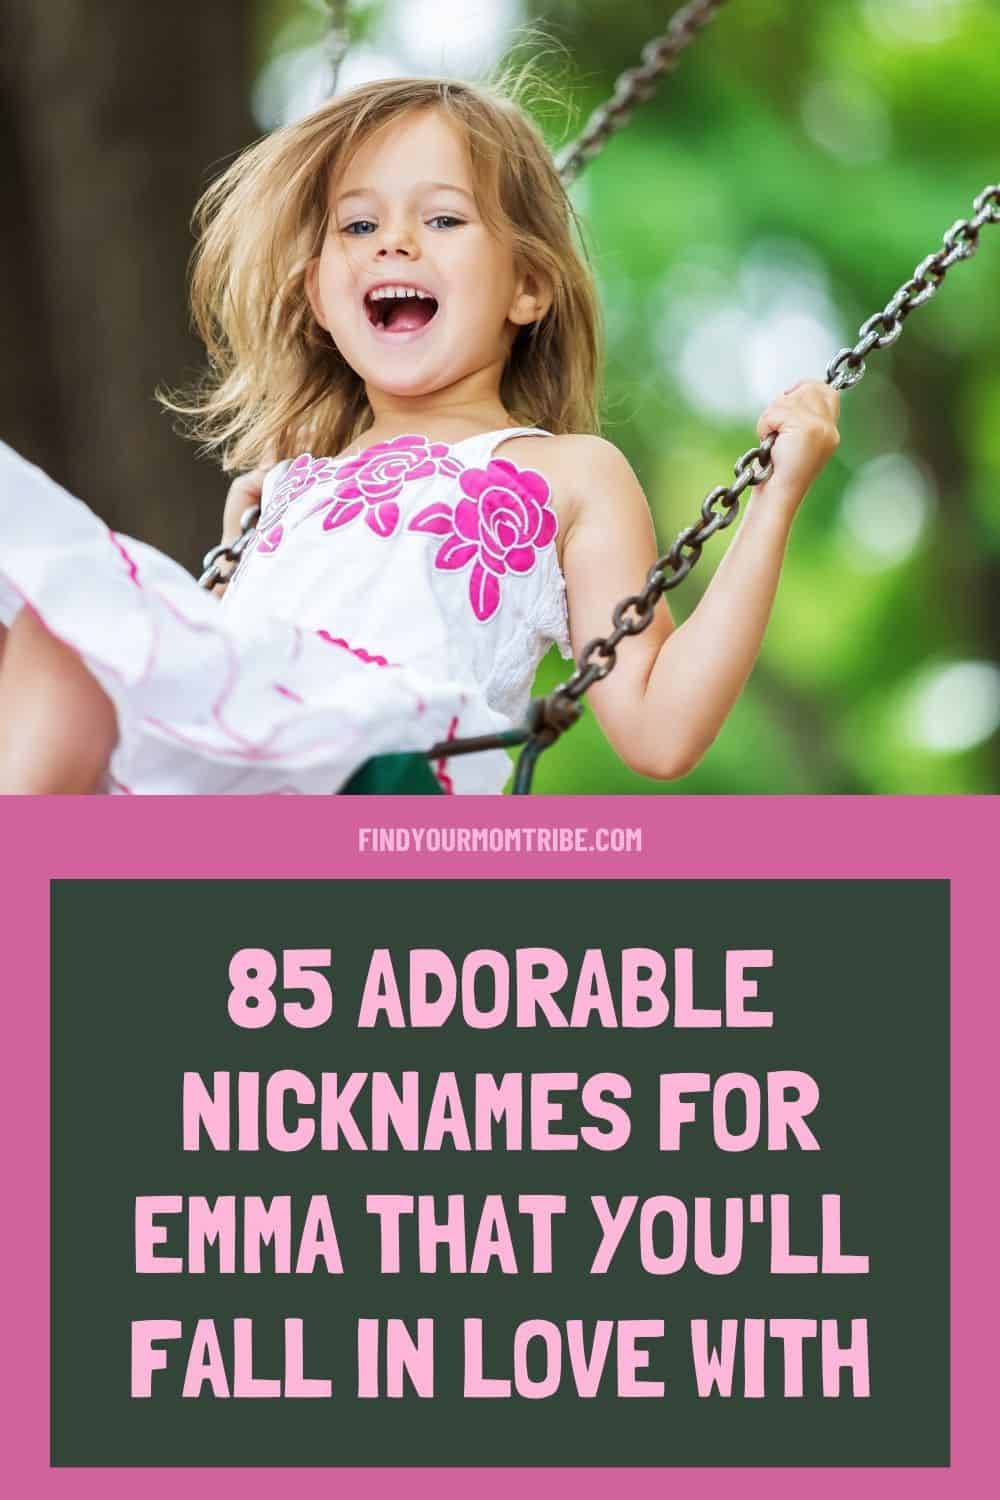 Pinterest nicknames for emma 